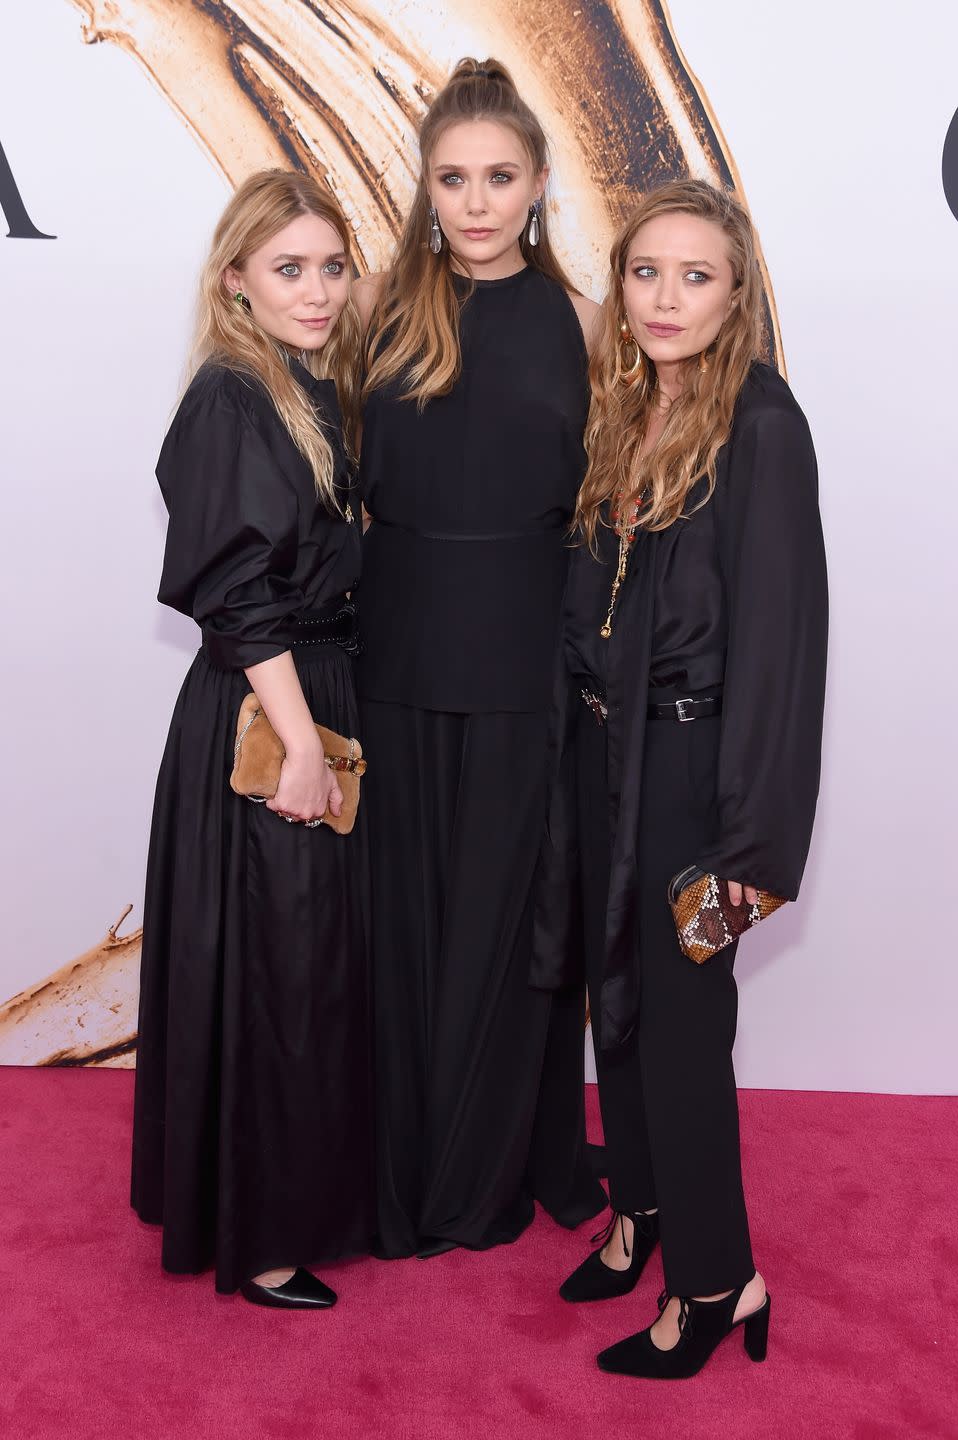 Ashley Olsen, Elizabeth Olsen, and Mary-Kate Olsen